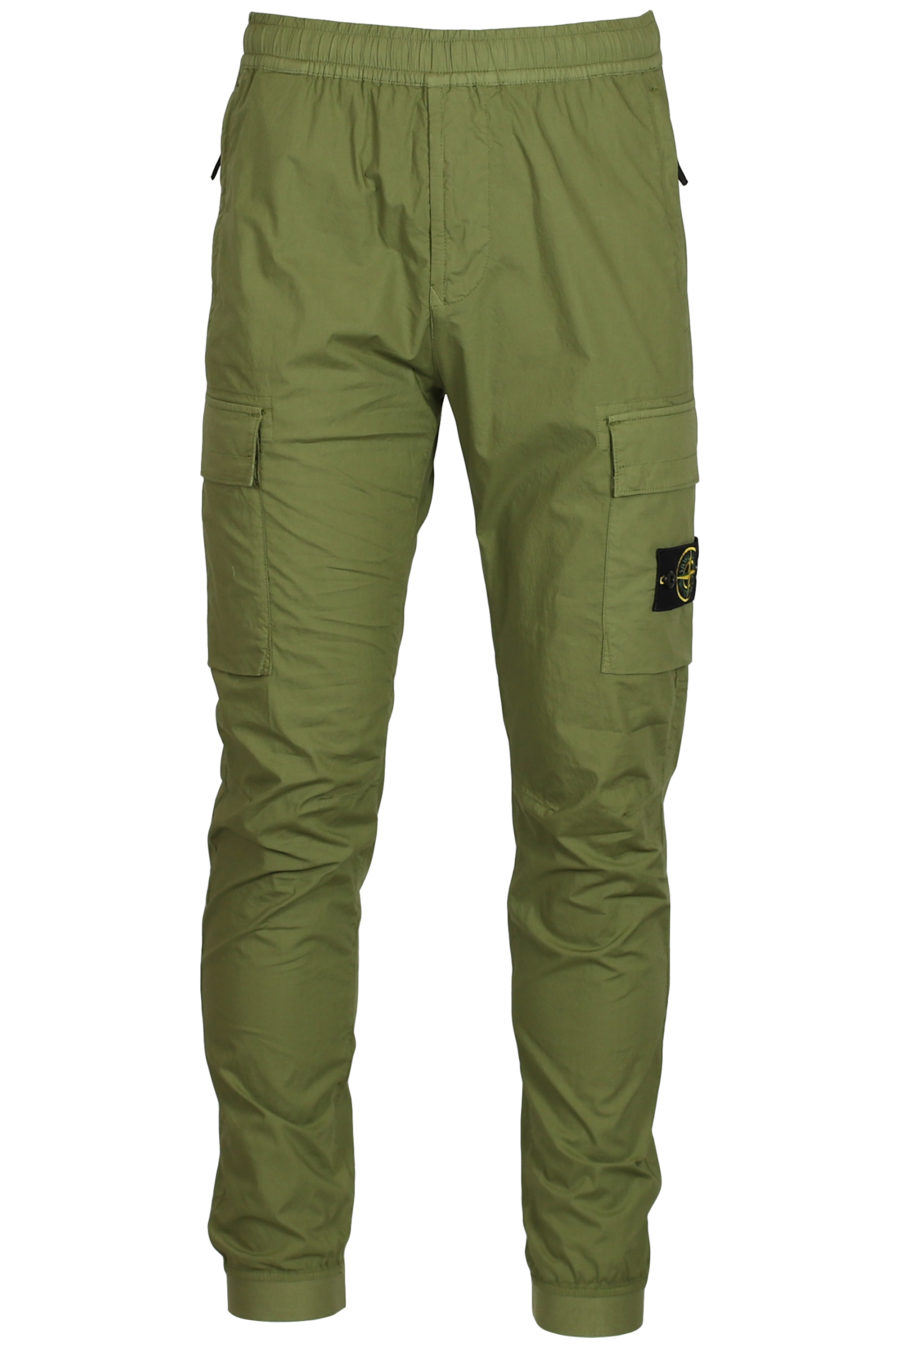 Pantalón con bolsillos verde militar - IMG 3759